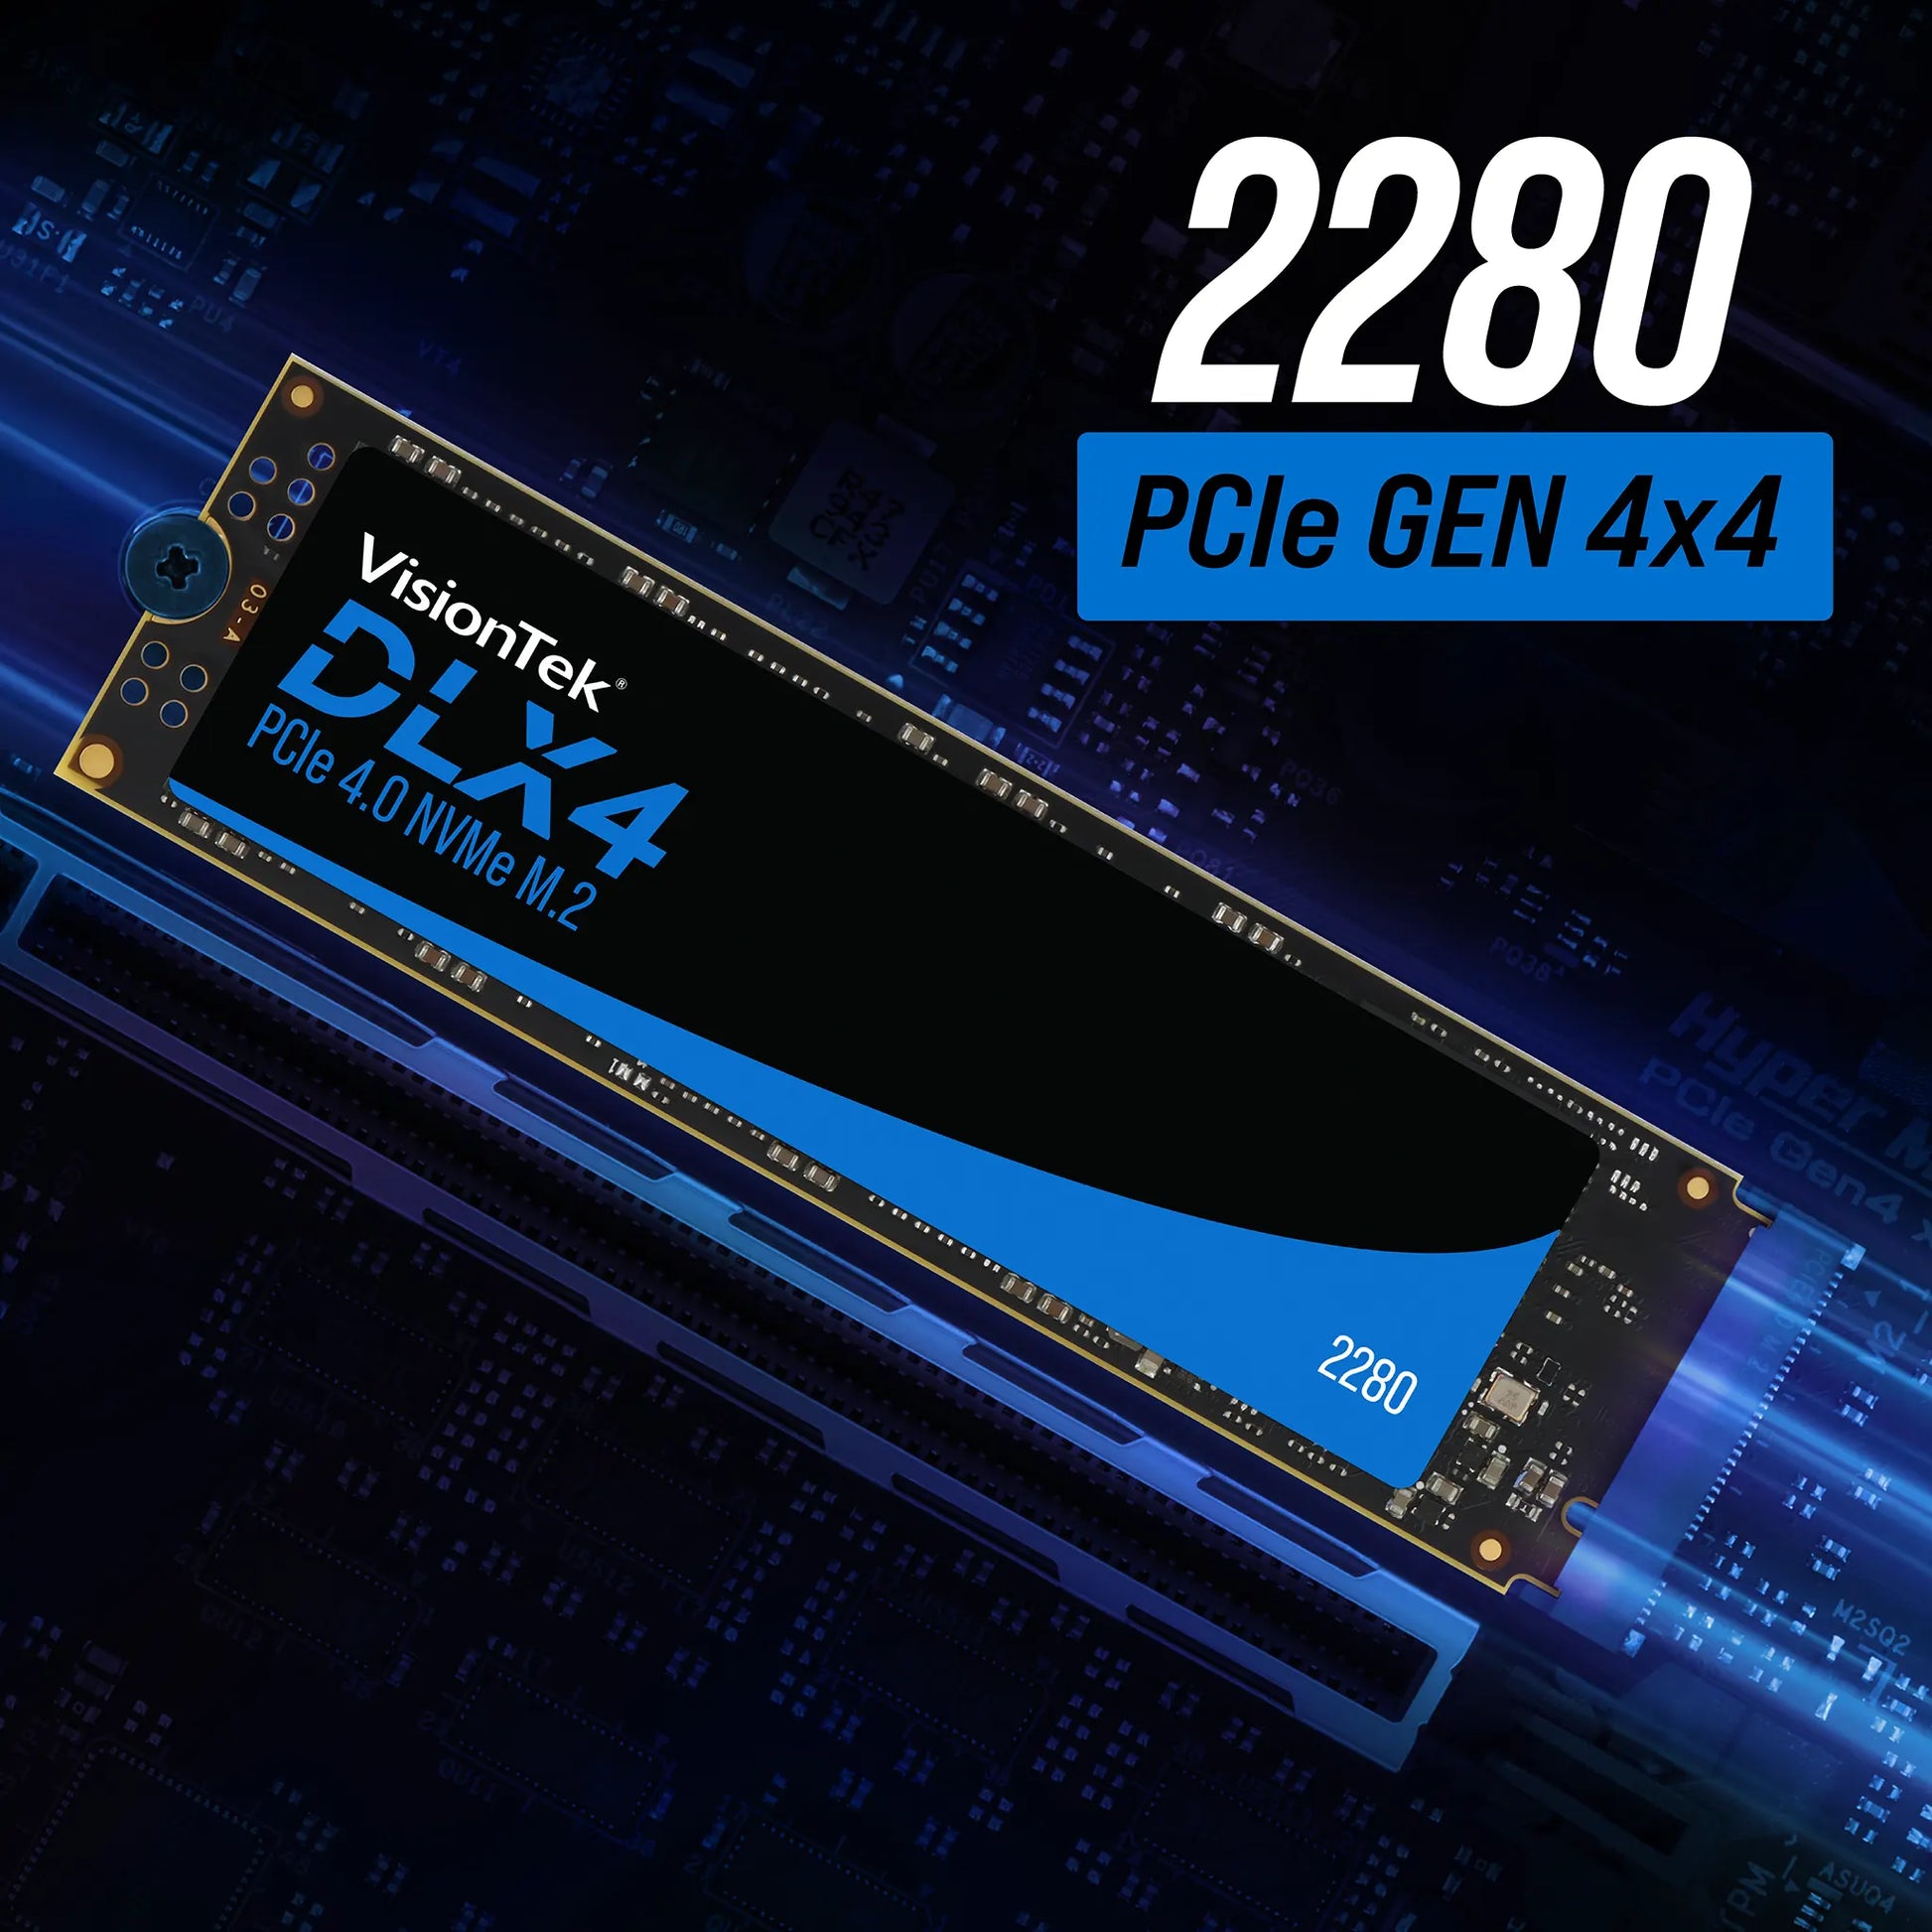 VisionTek DLX4 2242 M.2 PCIe 4.0 x4 SSD (NVMe) - 1TB